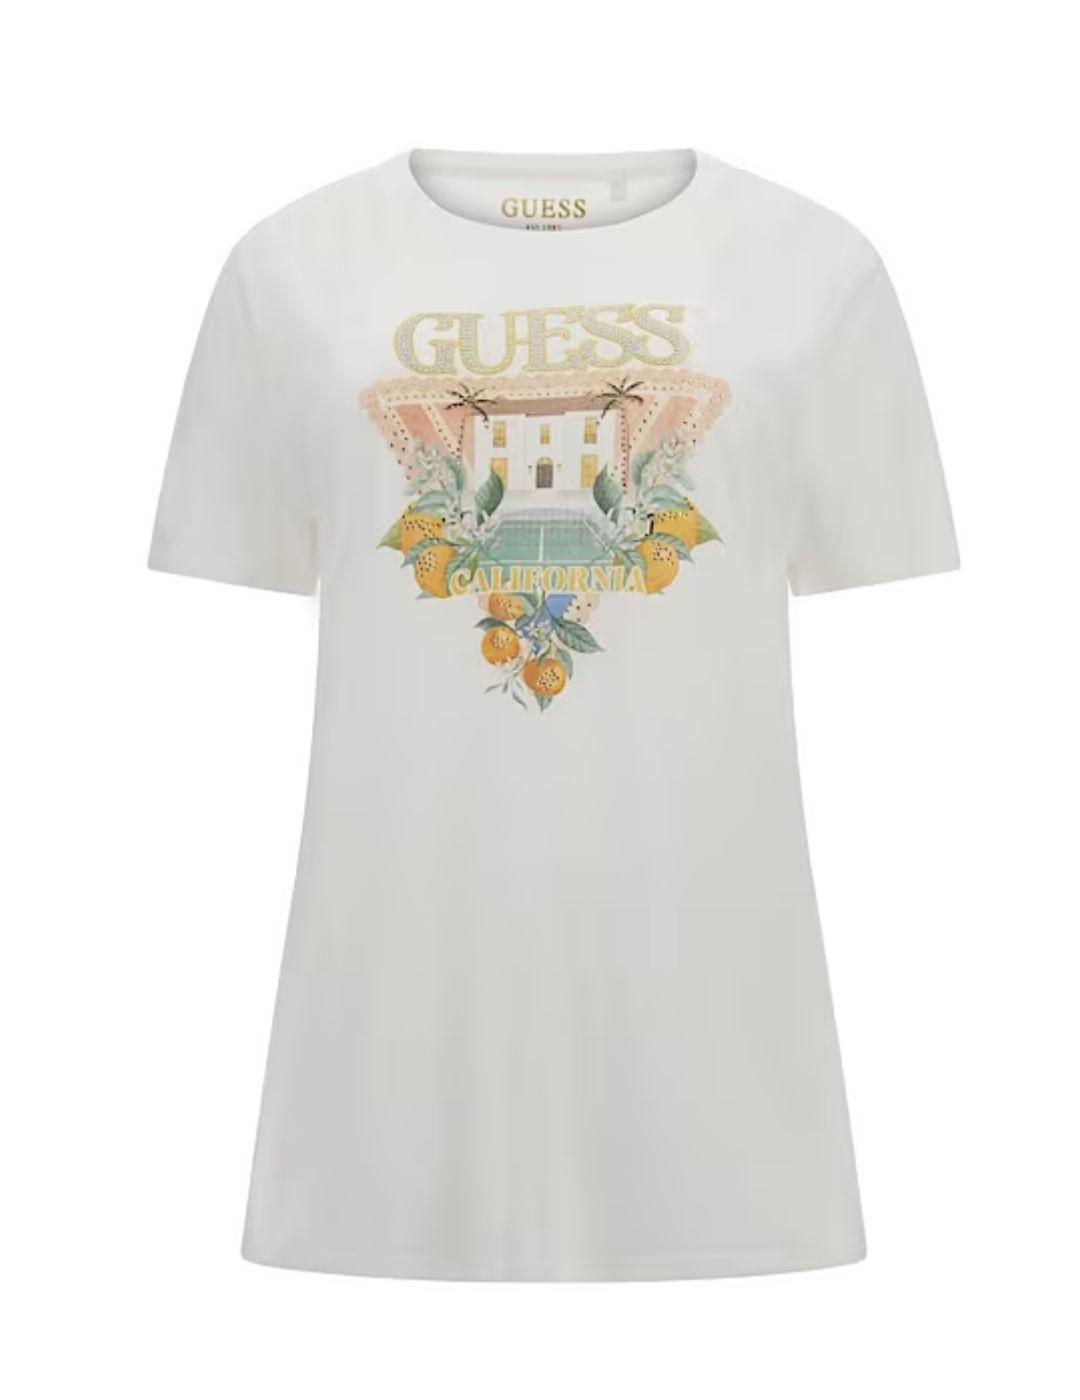 Camiseta Guess Mansion logo blanca manga corta para mujer